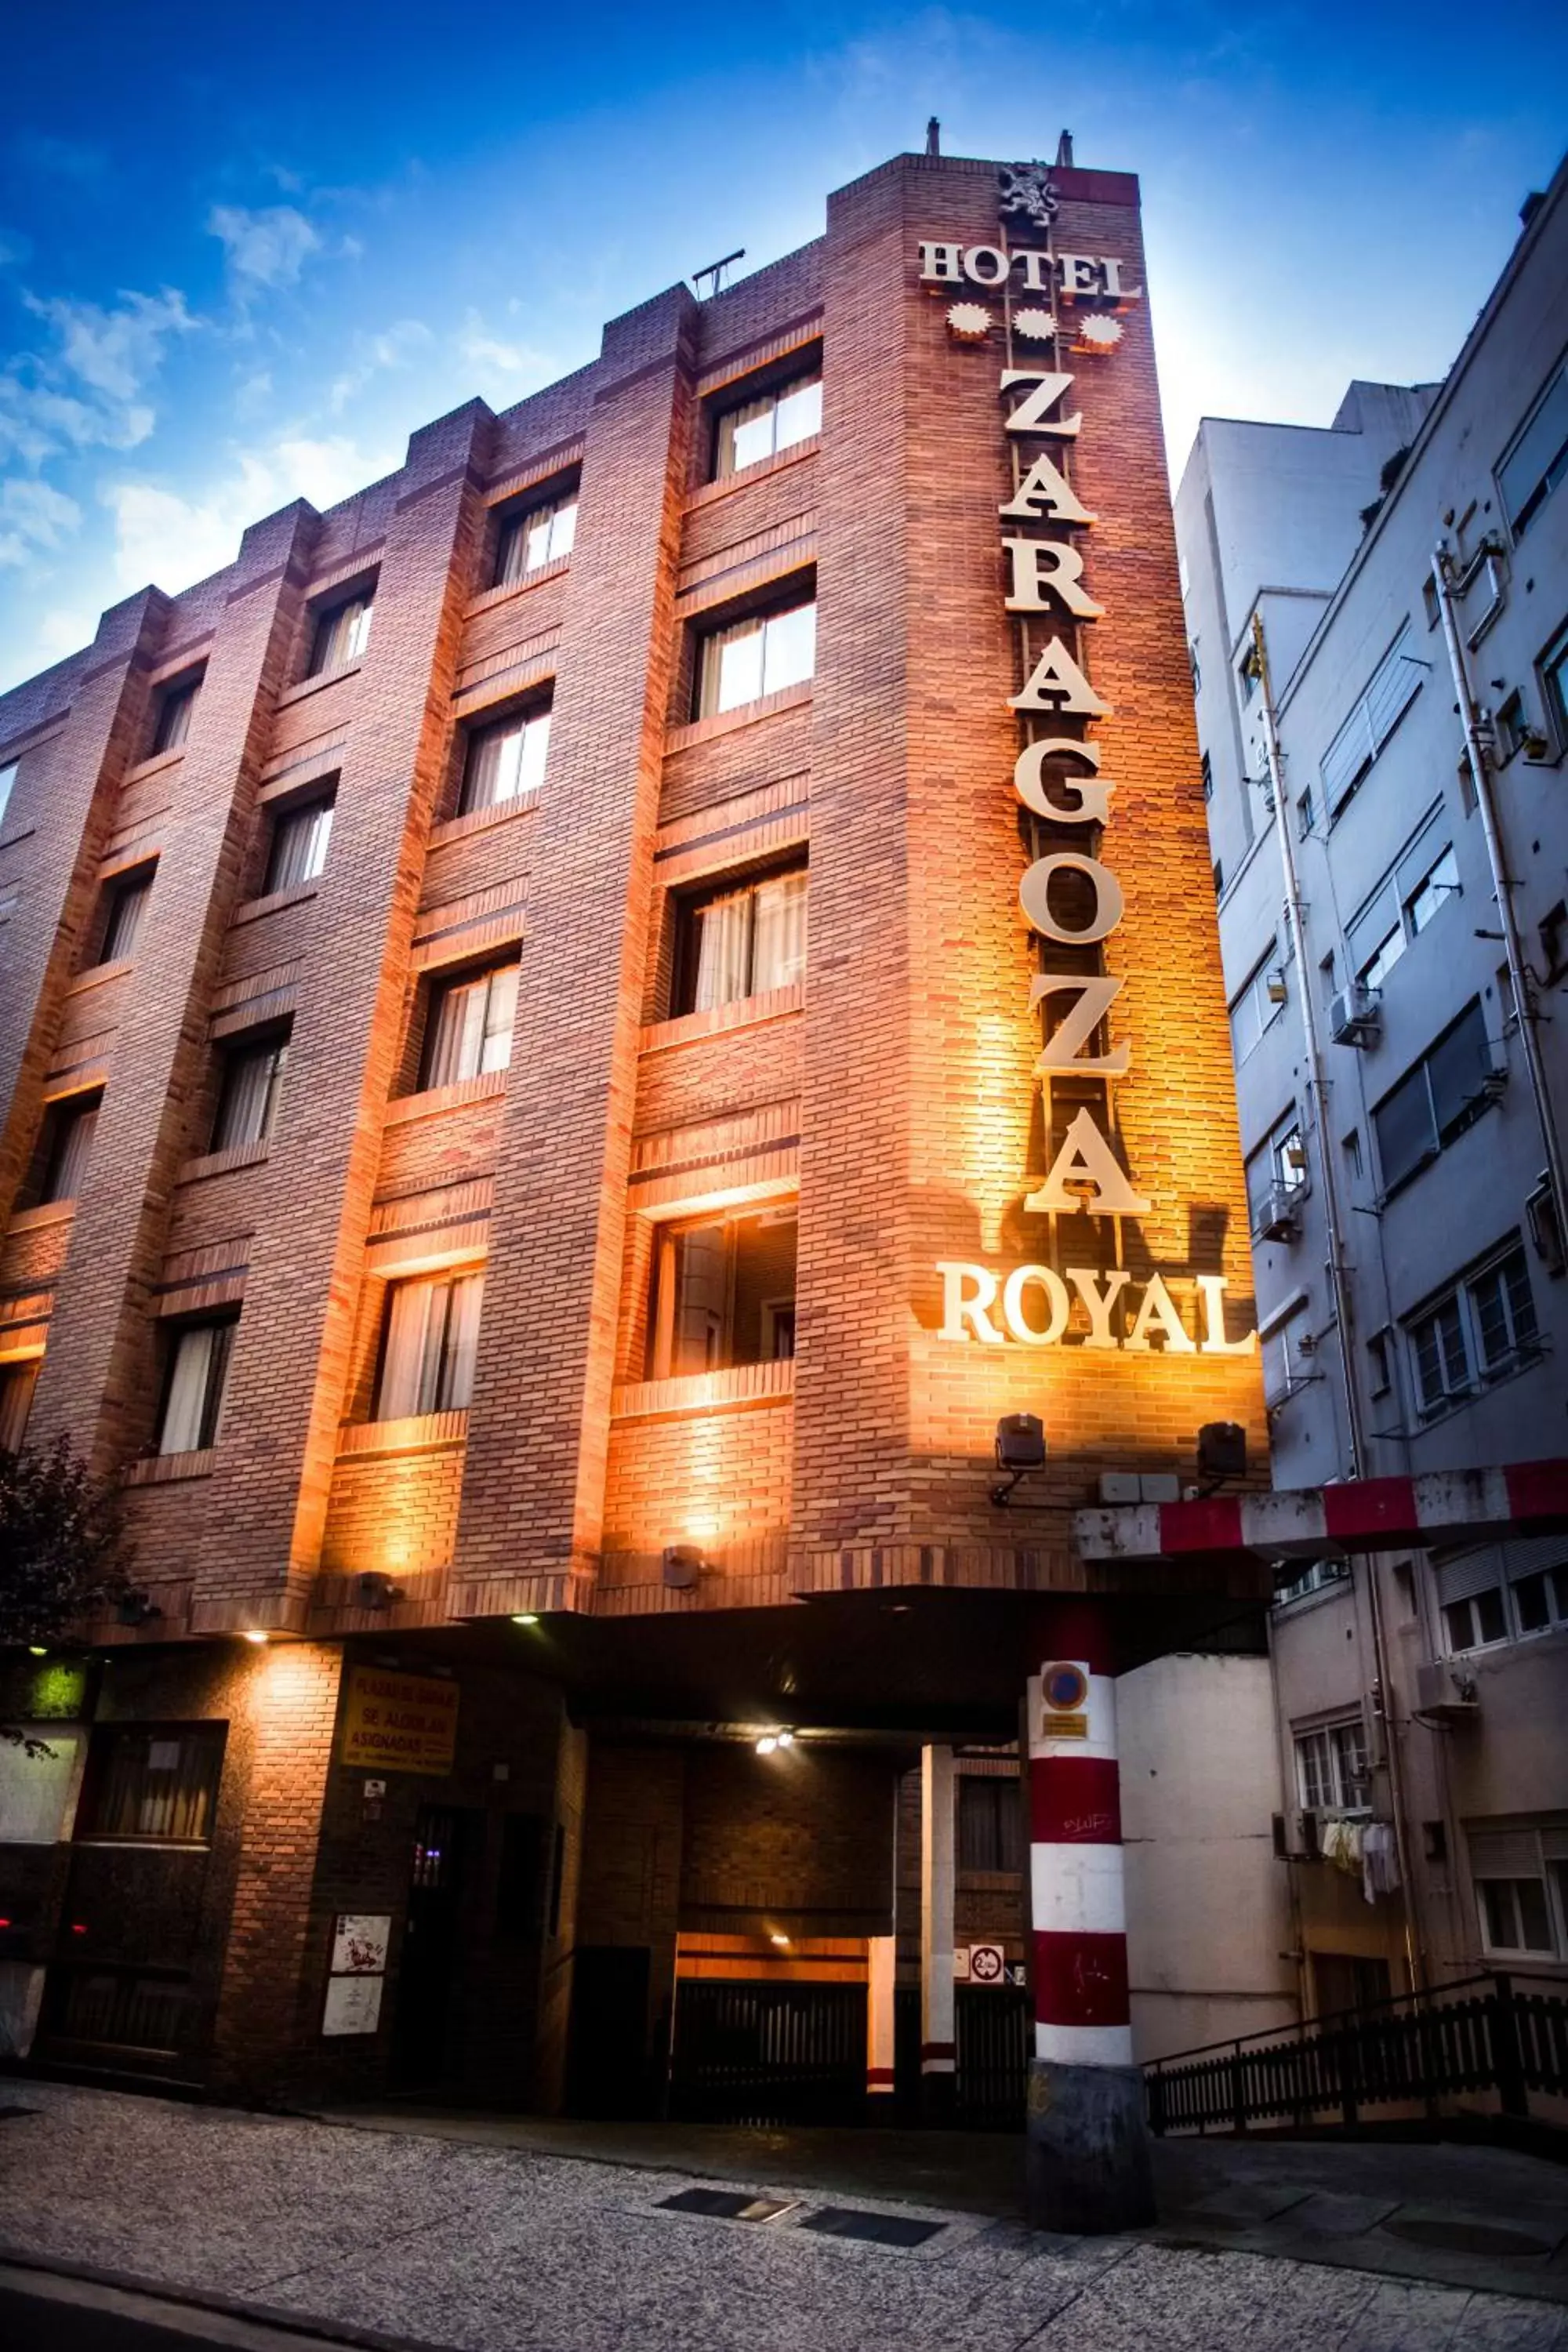 Property Building in Hotel Zaragoza Royal